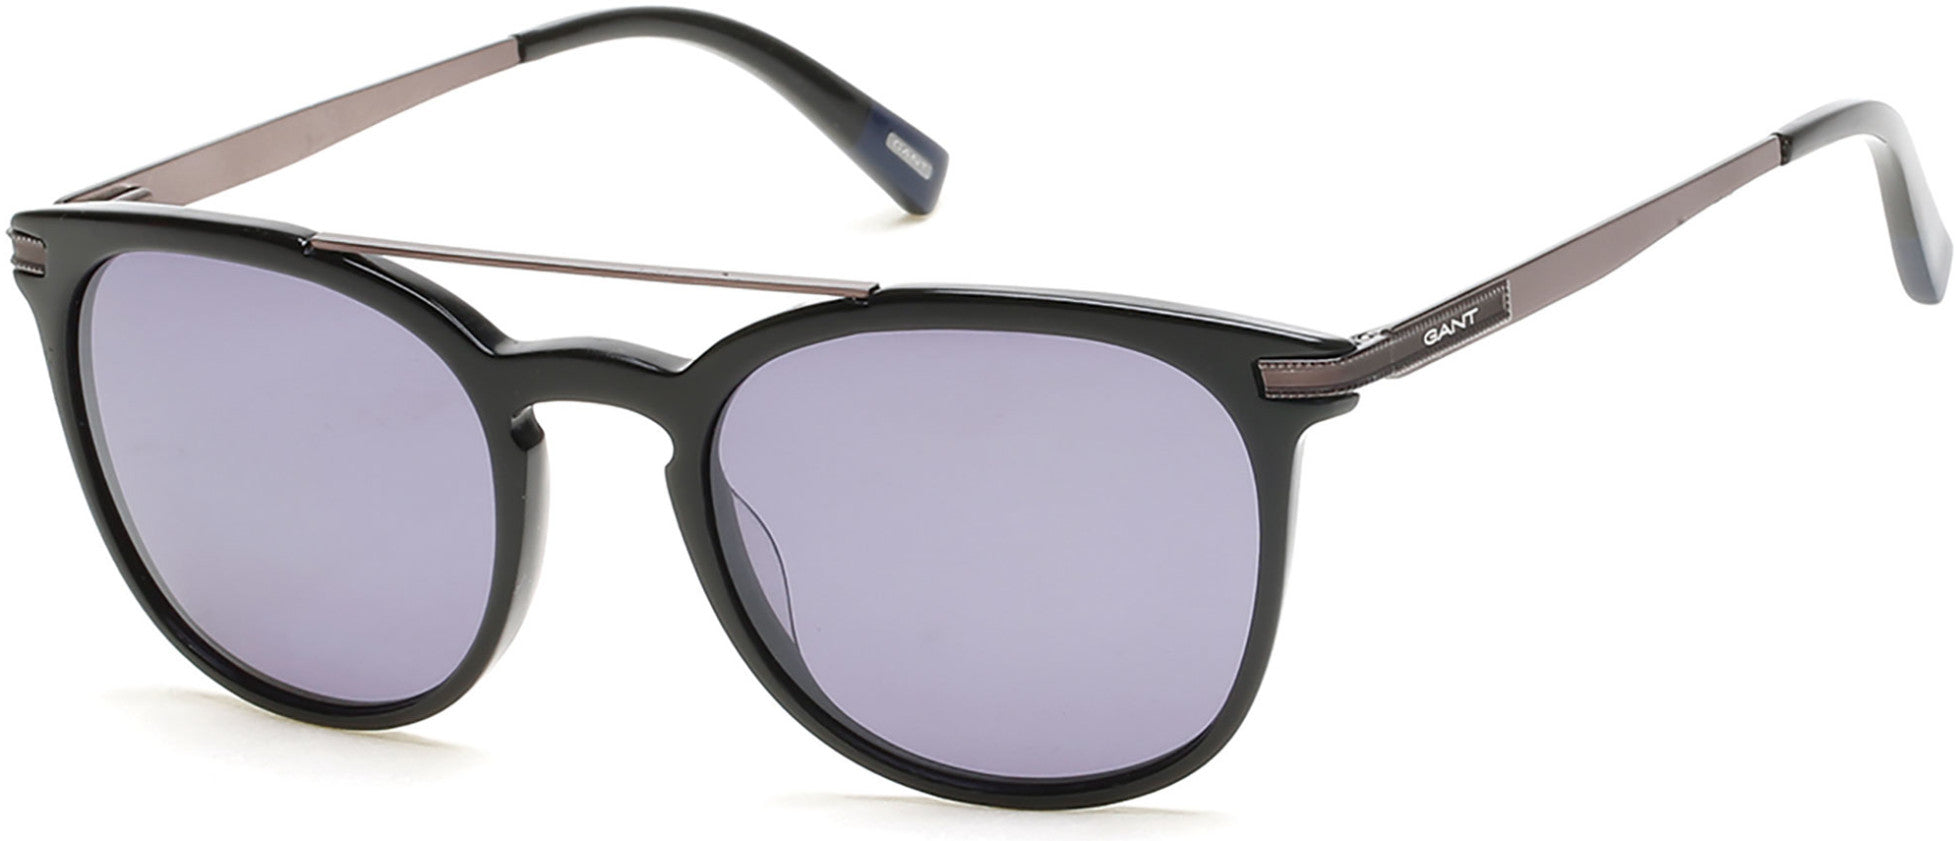 Gant GA7061 Round Sunglasses 01A-01A - Shiny Black, Smoke Lens